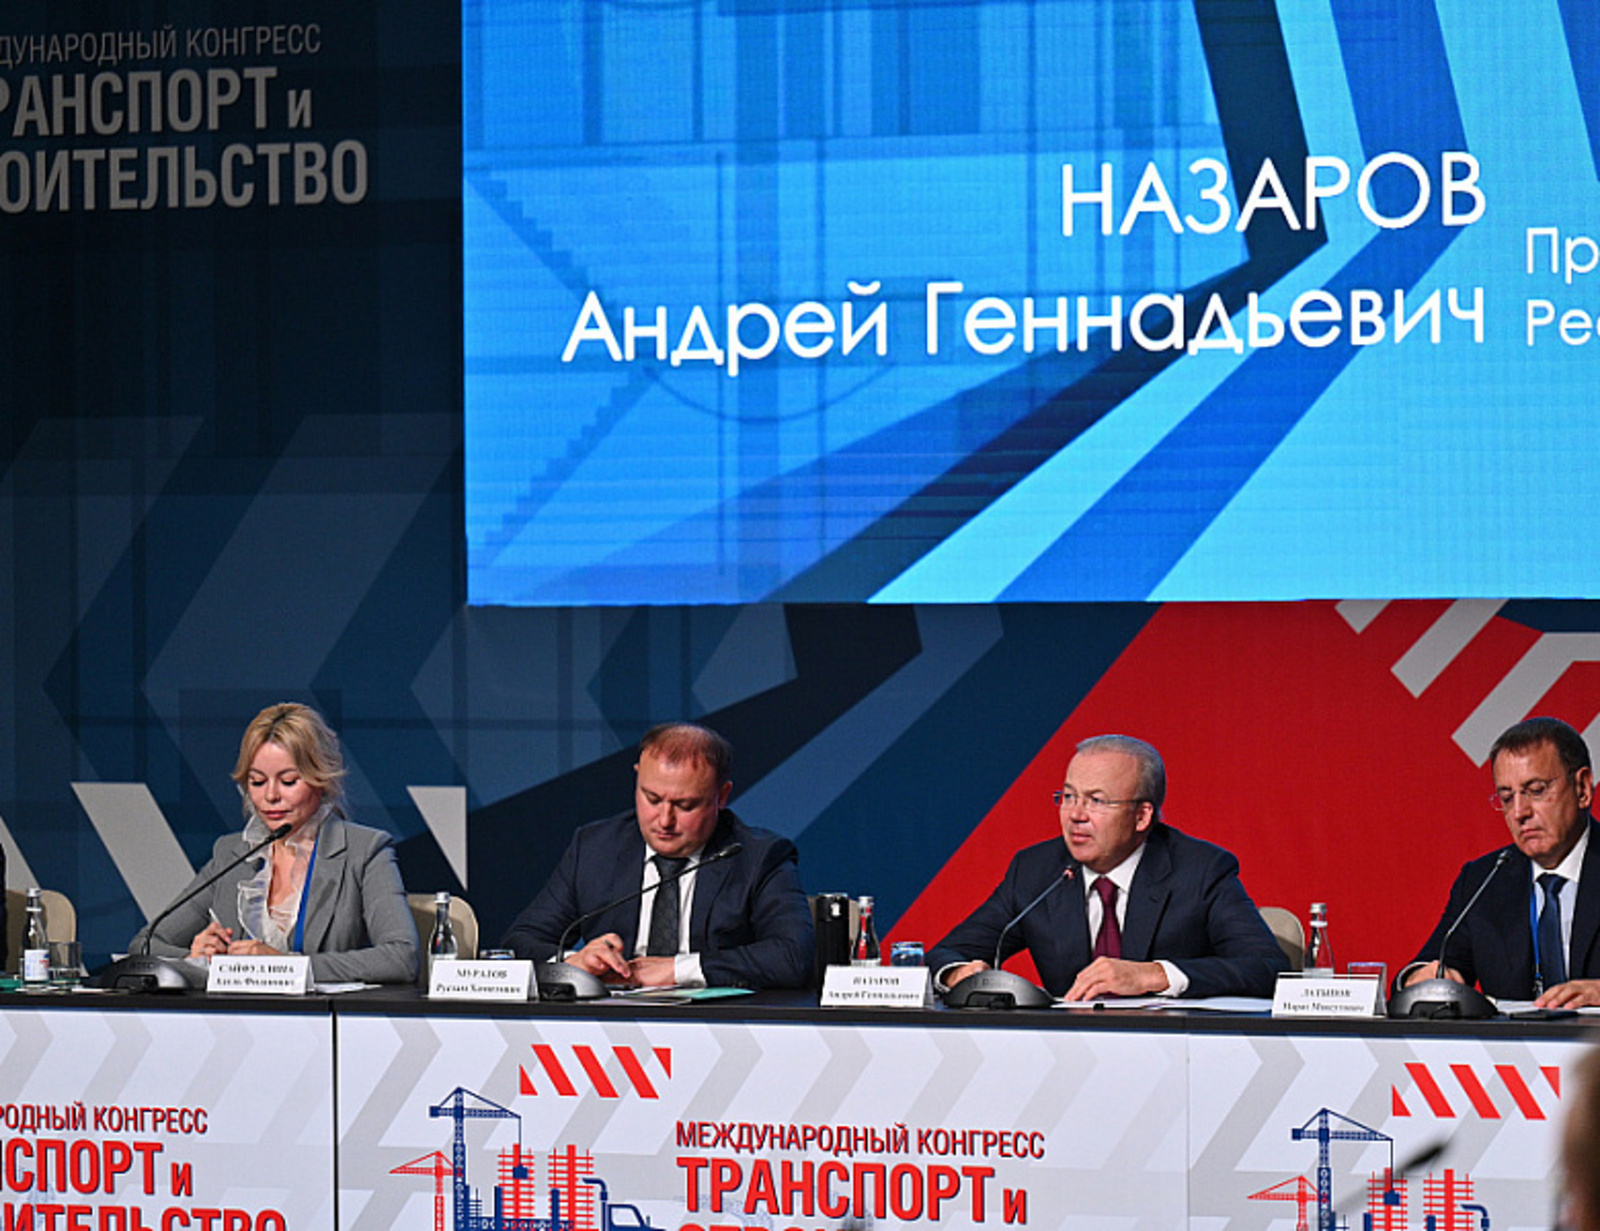 В Башкортостане состоялся съезд Ассоциаций застройщиков регионов России и стран ближнего зарубежья